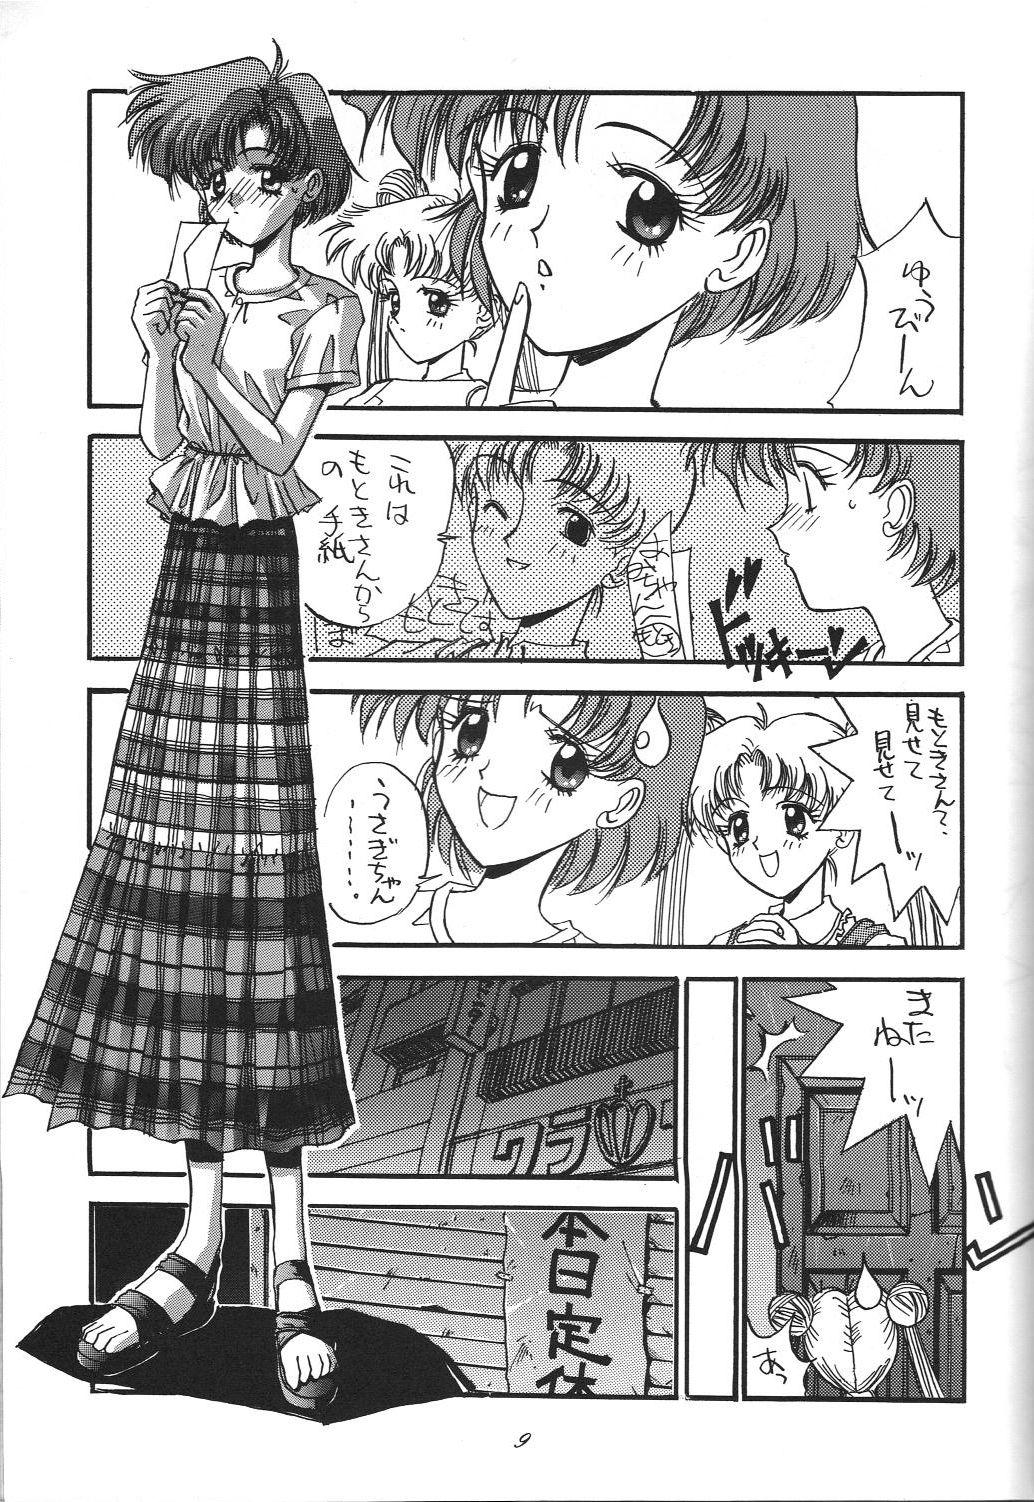 Perfect Pussy Kaishaku 6 Seppuku Keikaku - Sailor moon Ah my goddess Adult - Page 9